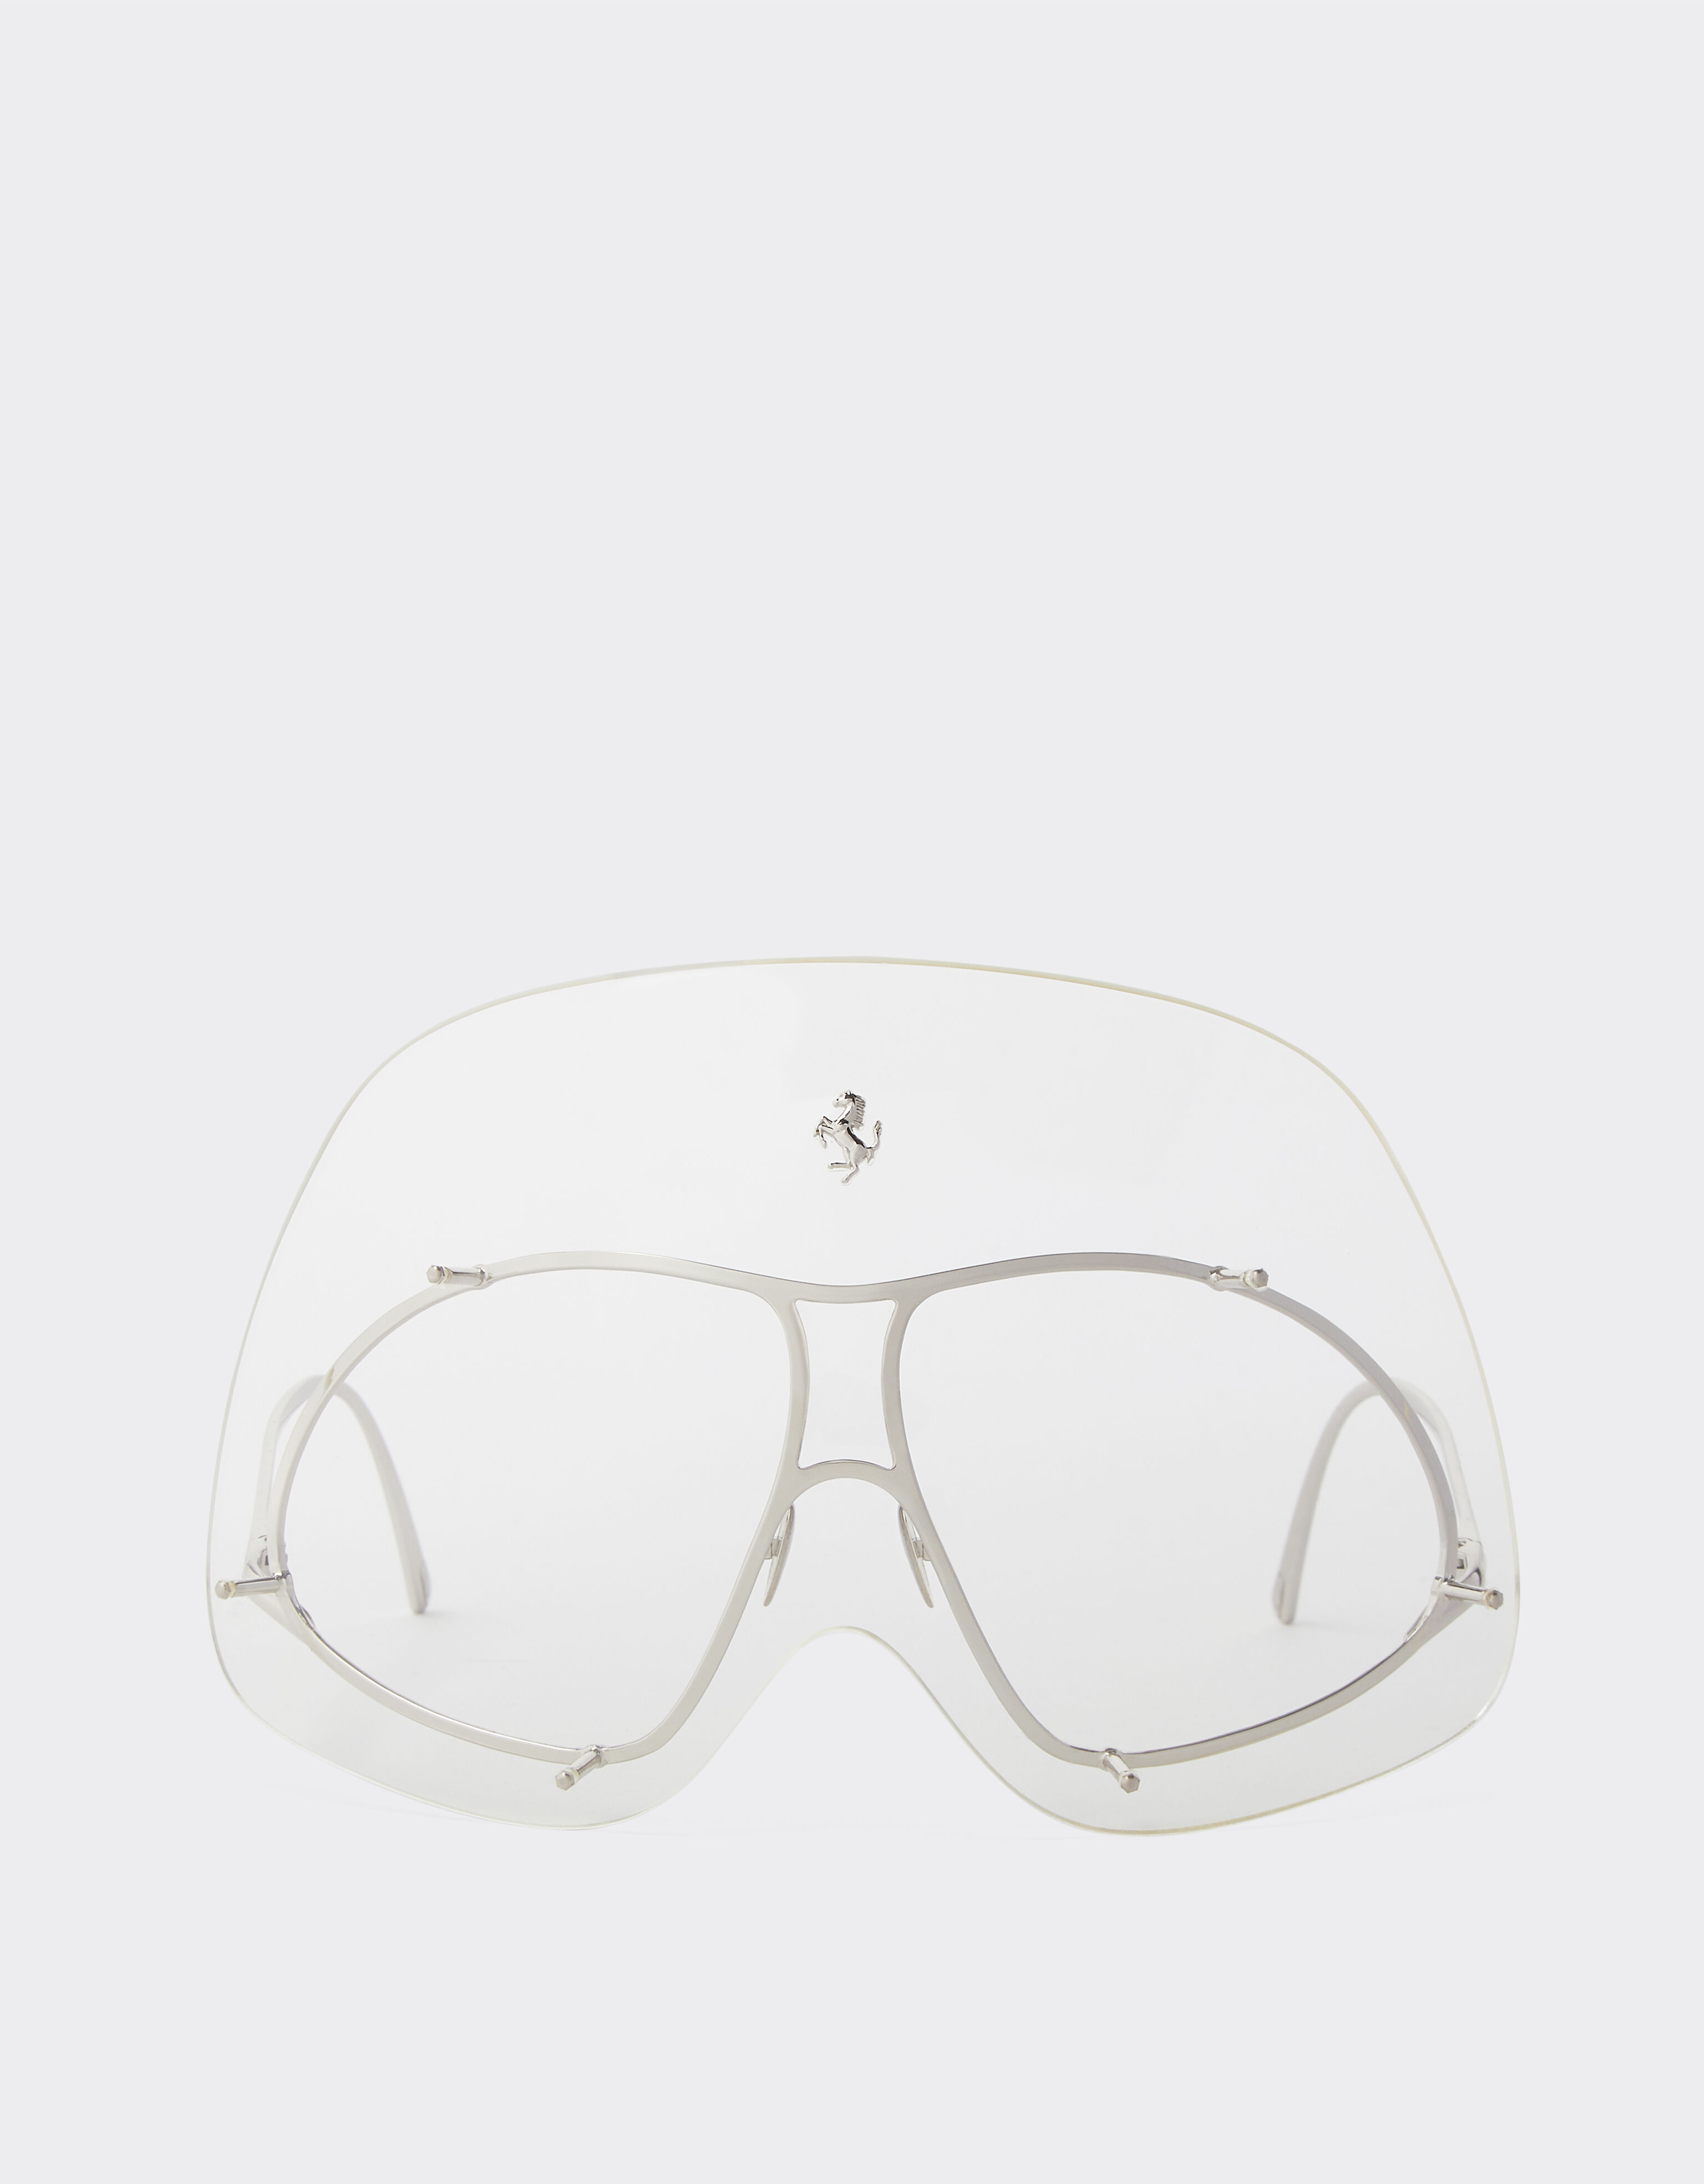 Ferrari Gafas de sol Ferrari de edición limitada en metal con máscara transparente Blanco óptico F1258f